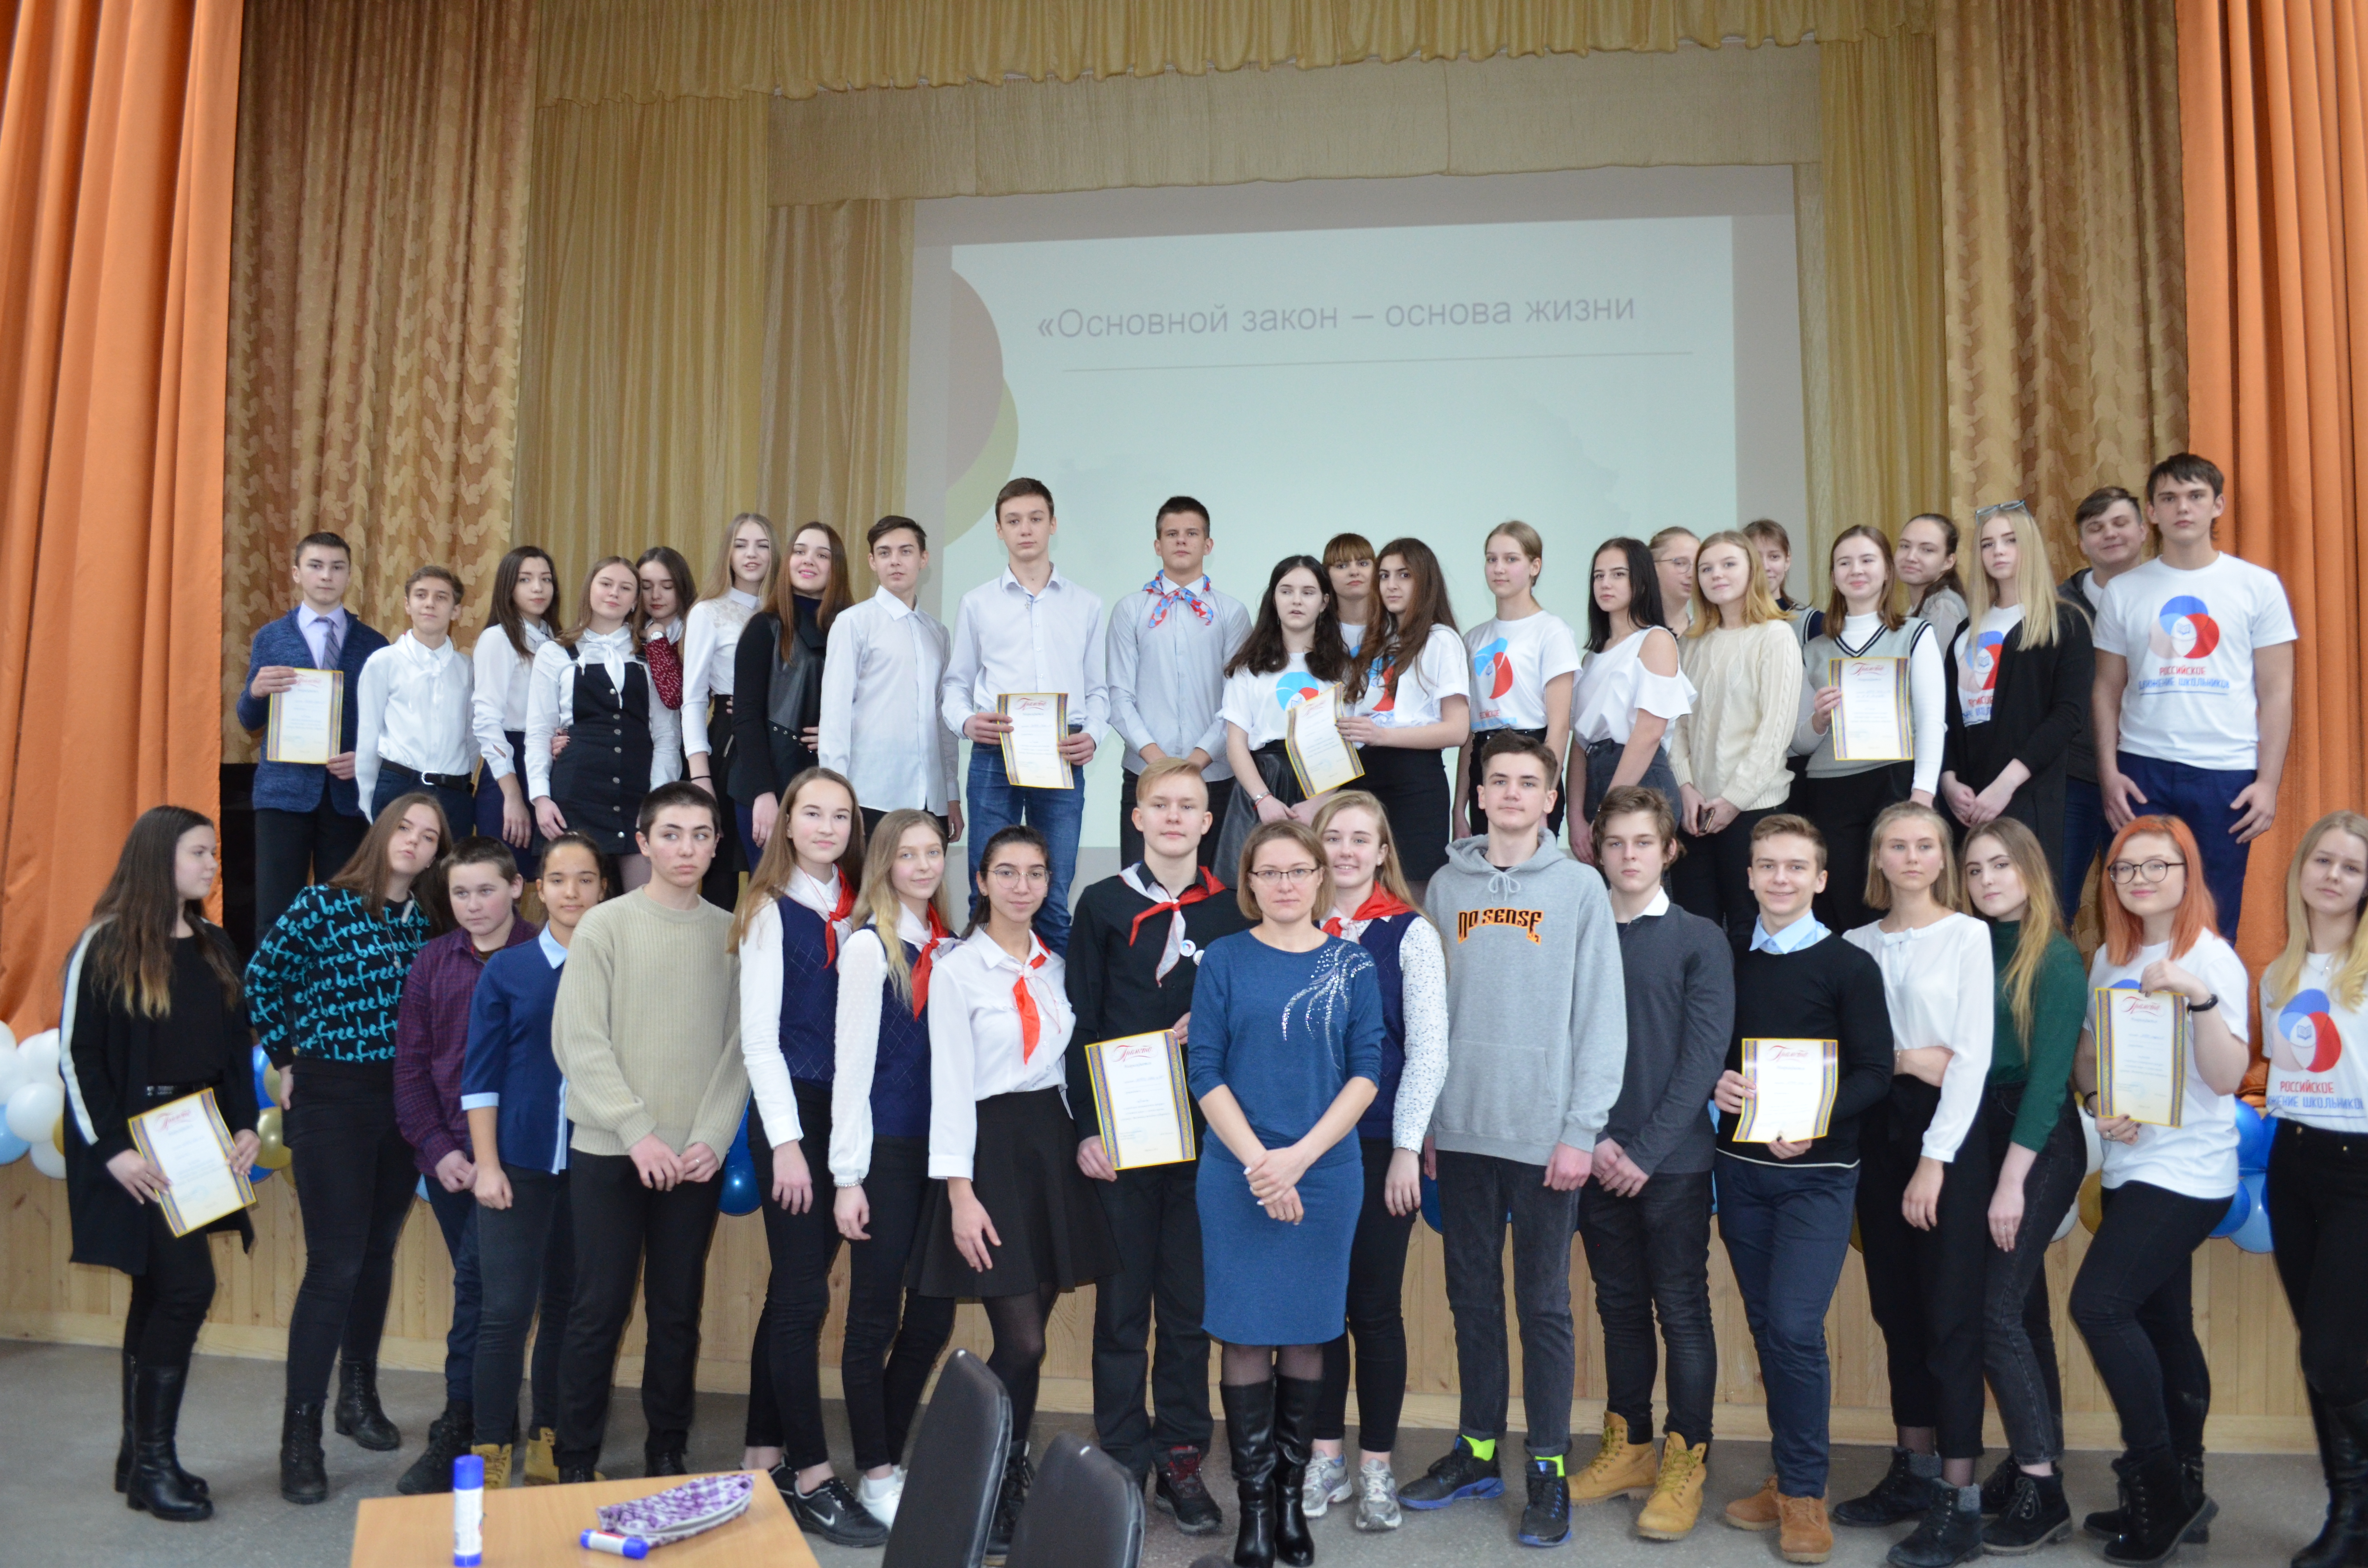 20 февраля 2019 года на территории МБОУ «СОШ №31» было проведено межшкольное мероприятие для пилотных/опорных школ Российского движения школьников города Барнаула «Основной закон-основа жизни».